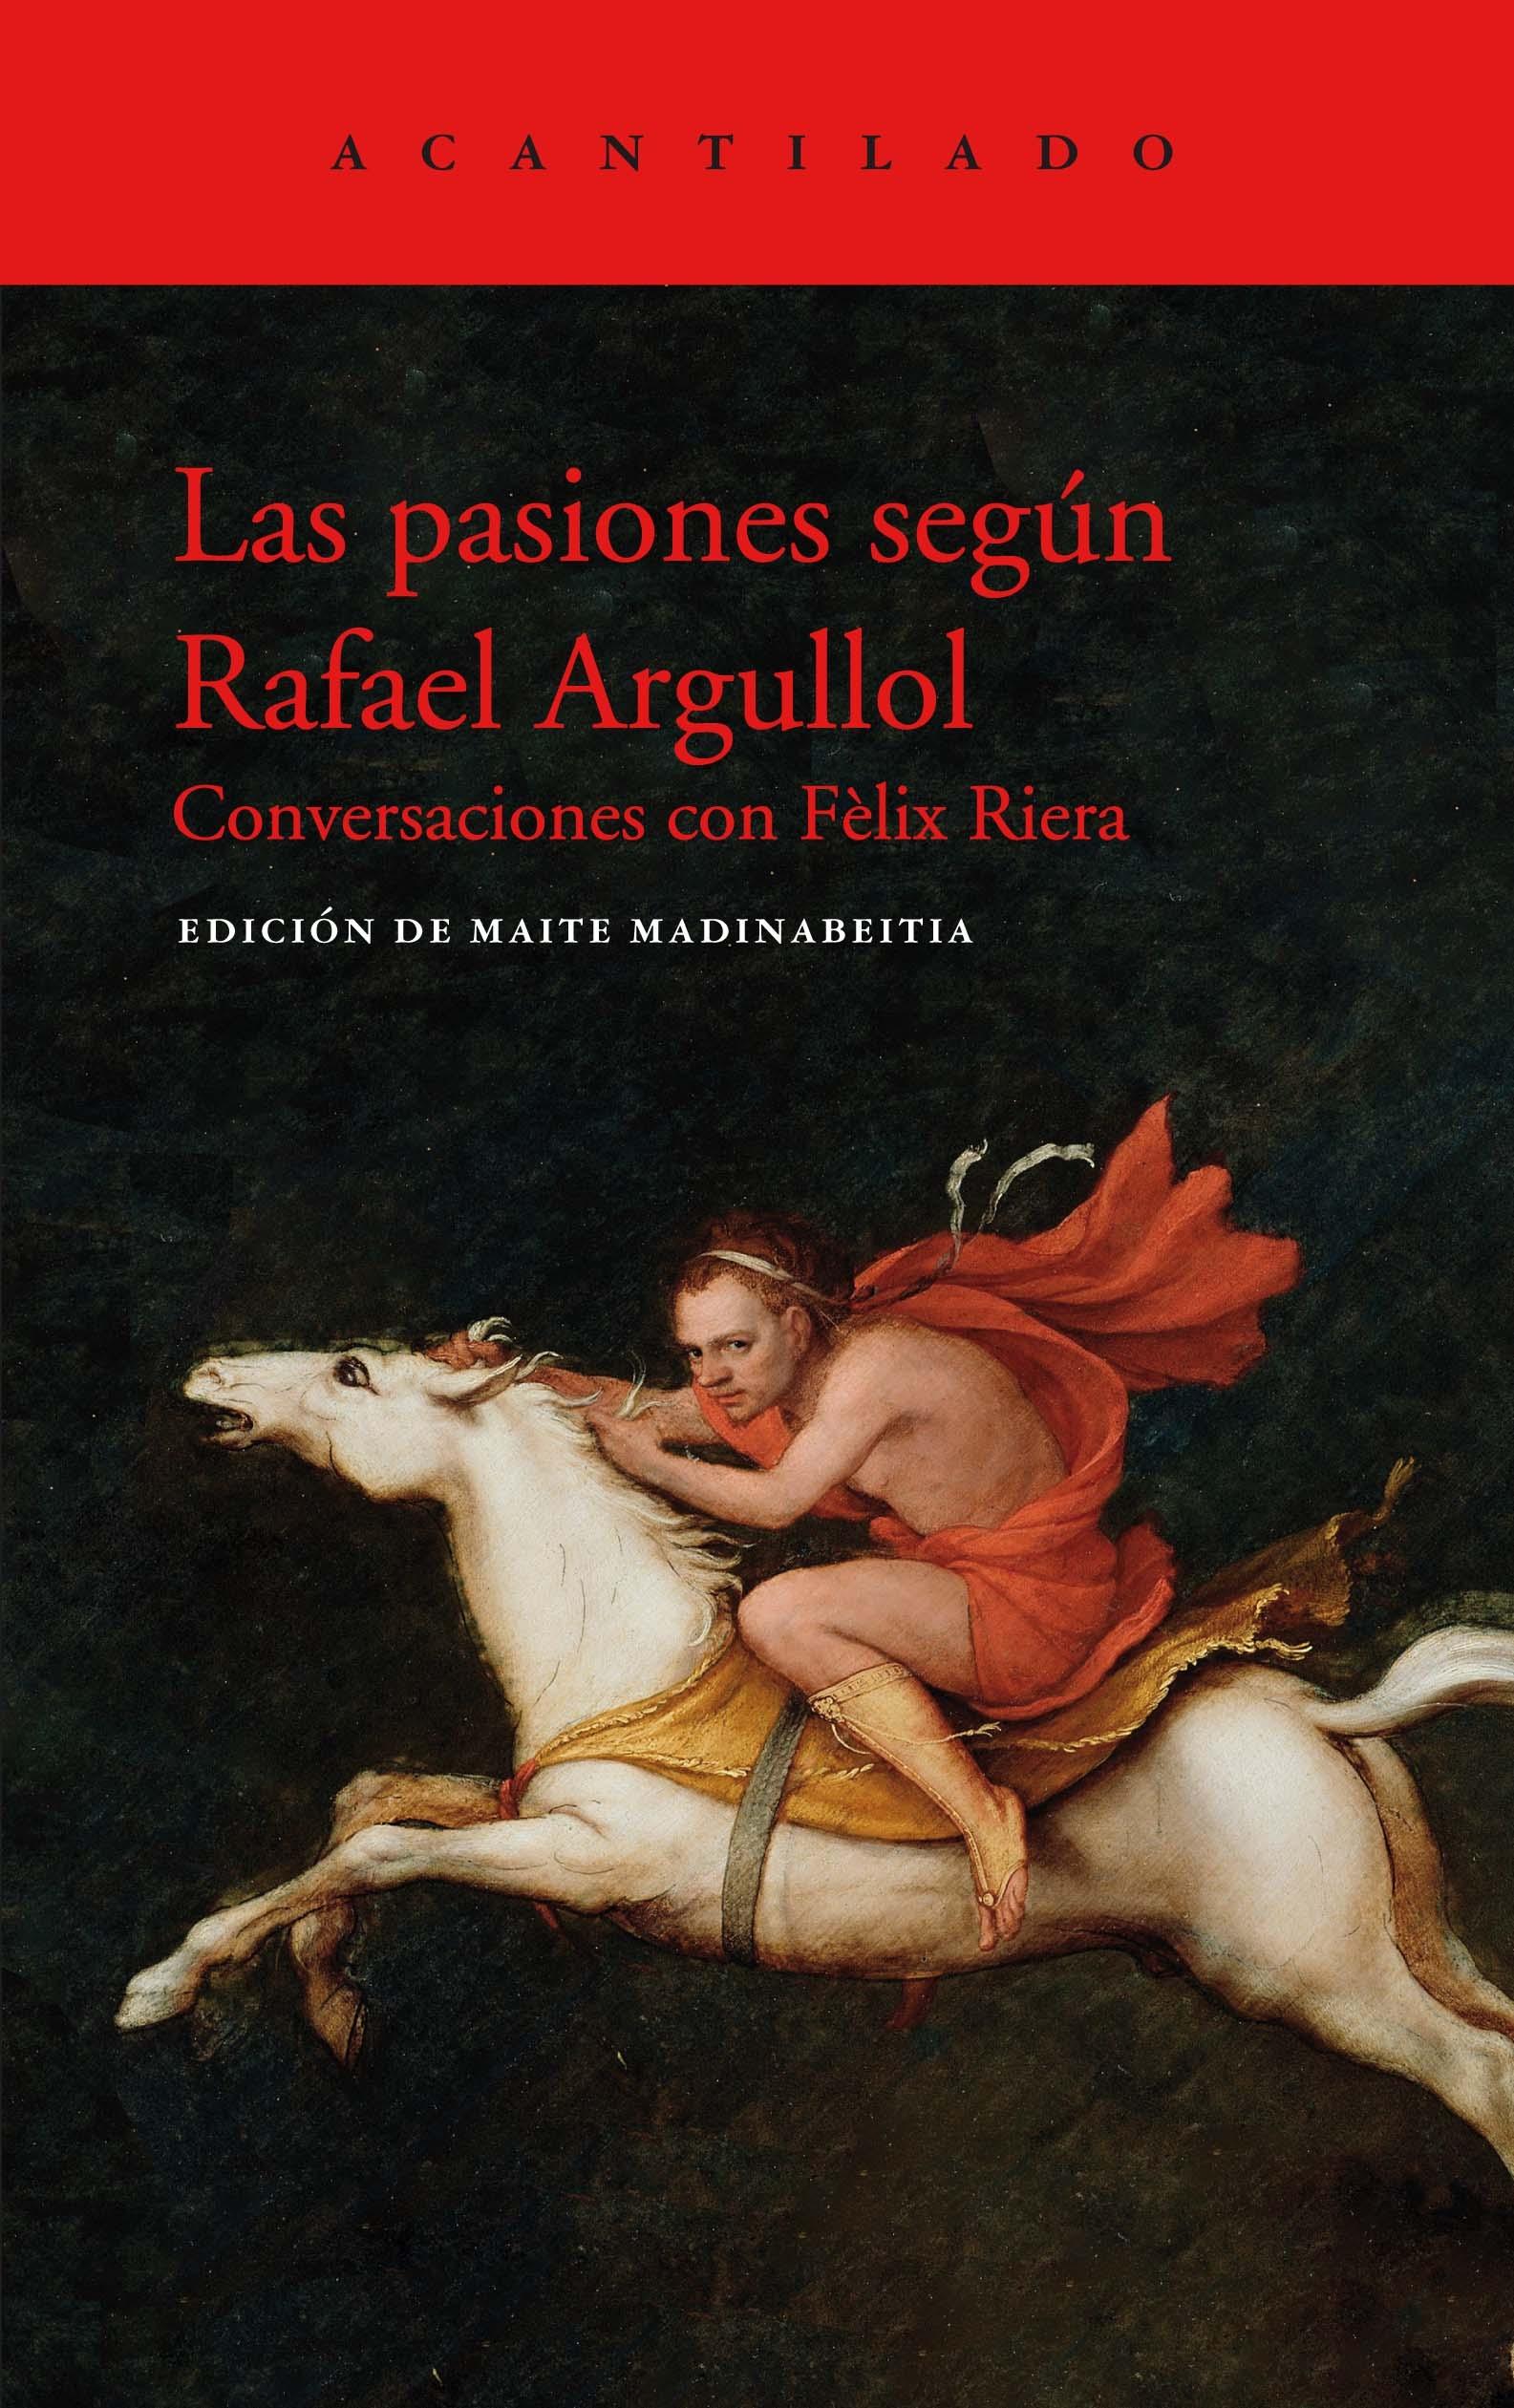 Las Pasiones según Rafael Argullol "Conversaciones con F Lix Riera"